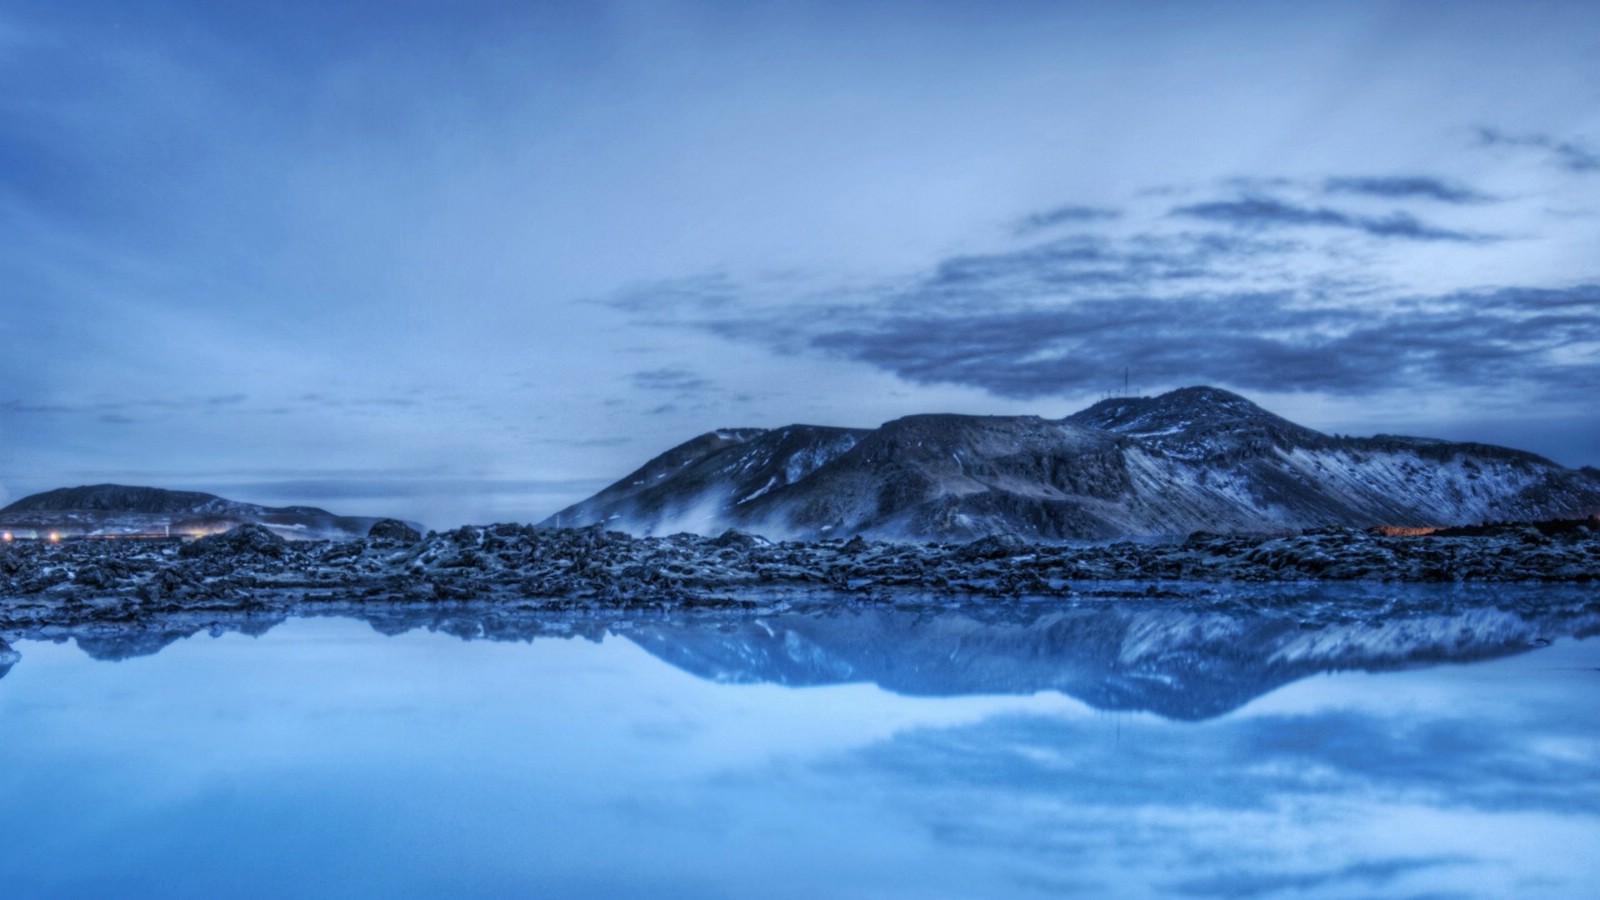 壁纸1600x900 冰岛蓝湖图片 乳蓝色的蓝湖 Blue Lagoon 图片壁纸 HDR 冰岛风光宽屏壁纸壁纸 HDR 冰岛风光宽屏壁纸图片 HDR 冰岛风光宽屏壁纸素材 人文壁纸 人文图库 人文图片素材桌面壁纸